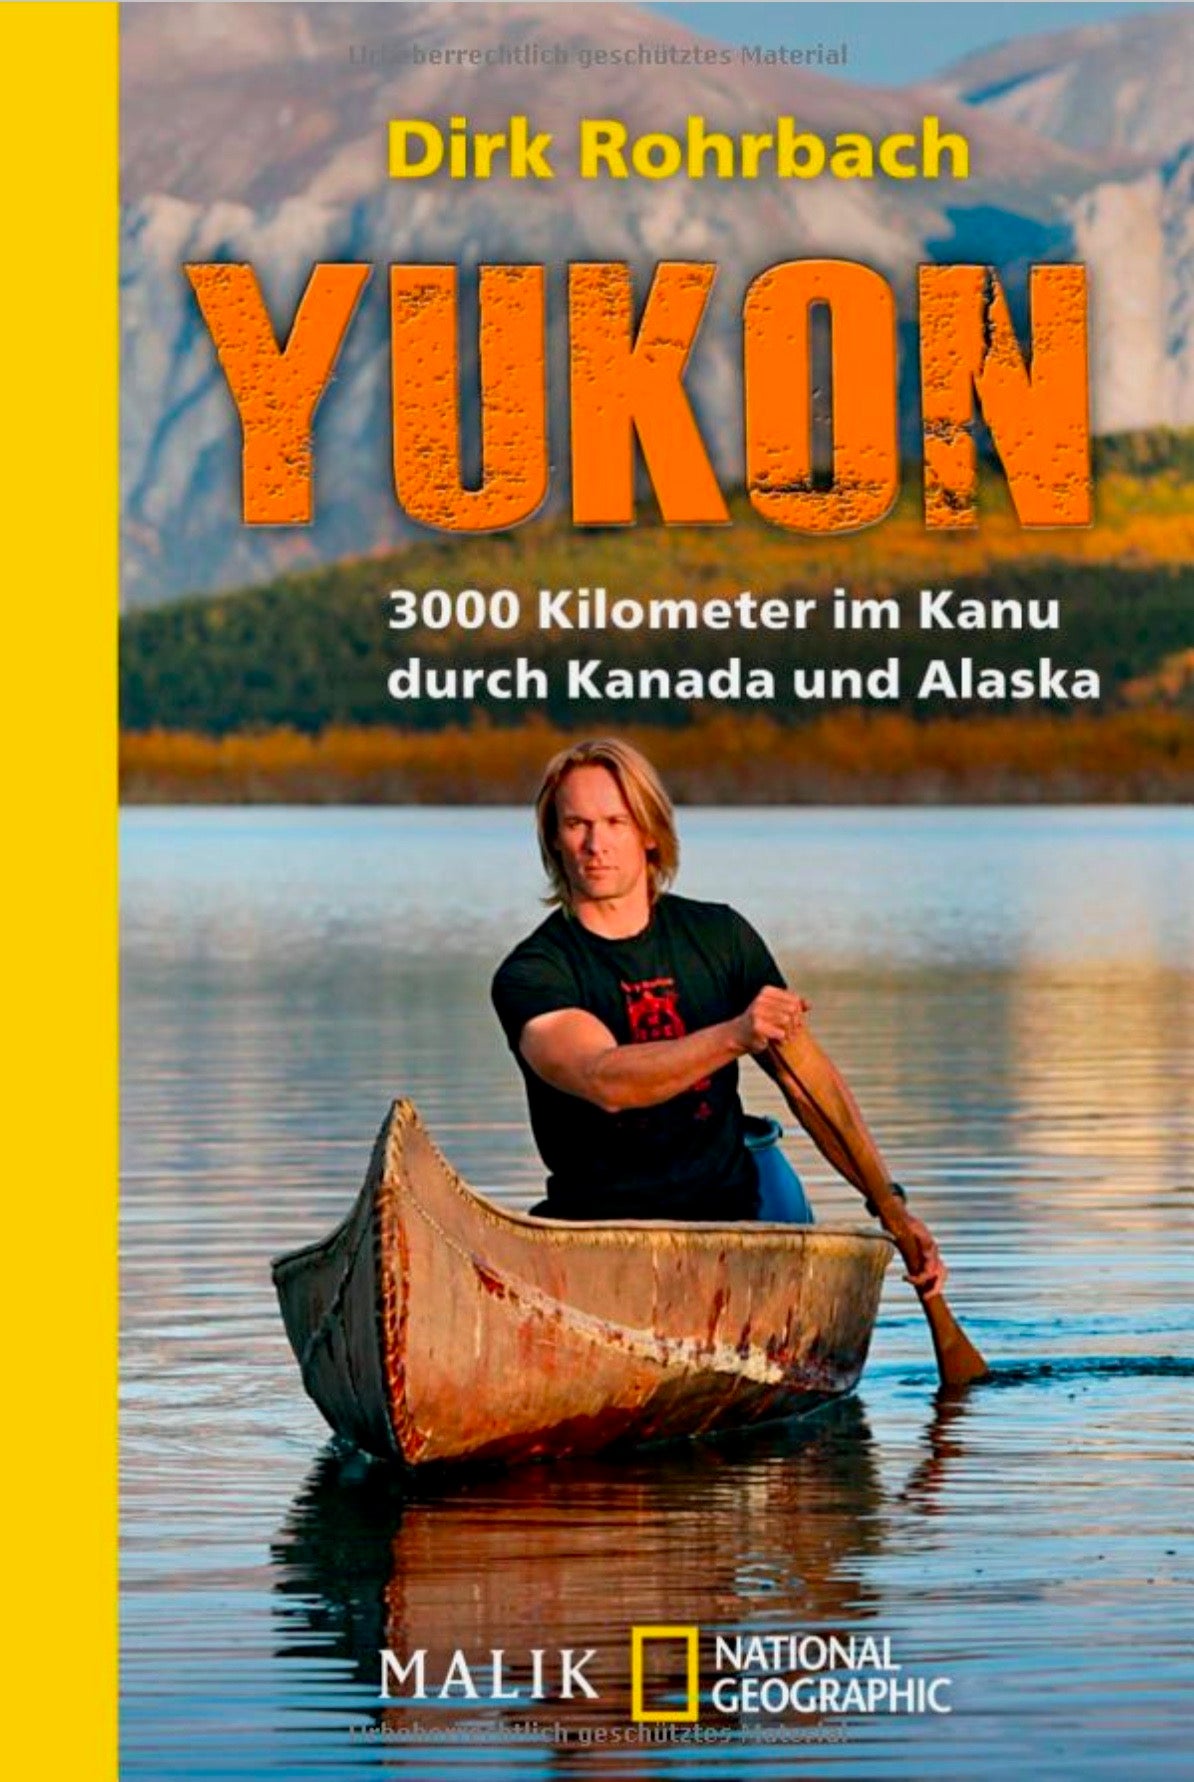 Traumreiseziel Yukon Territory